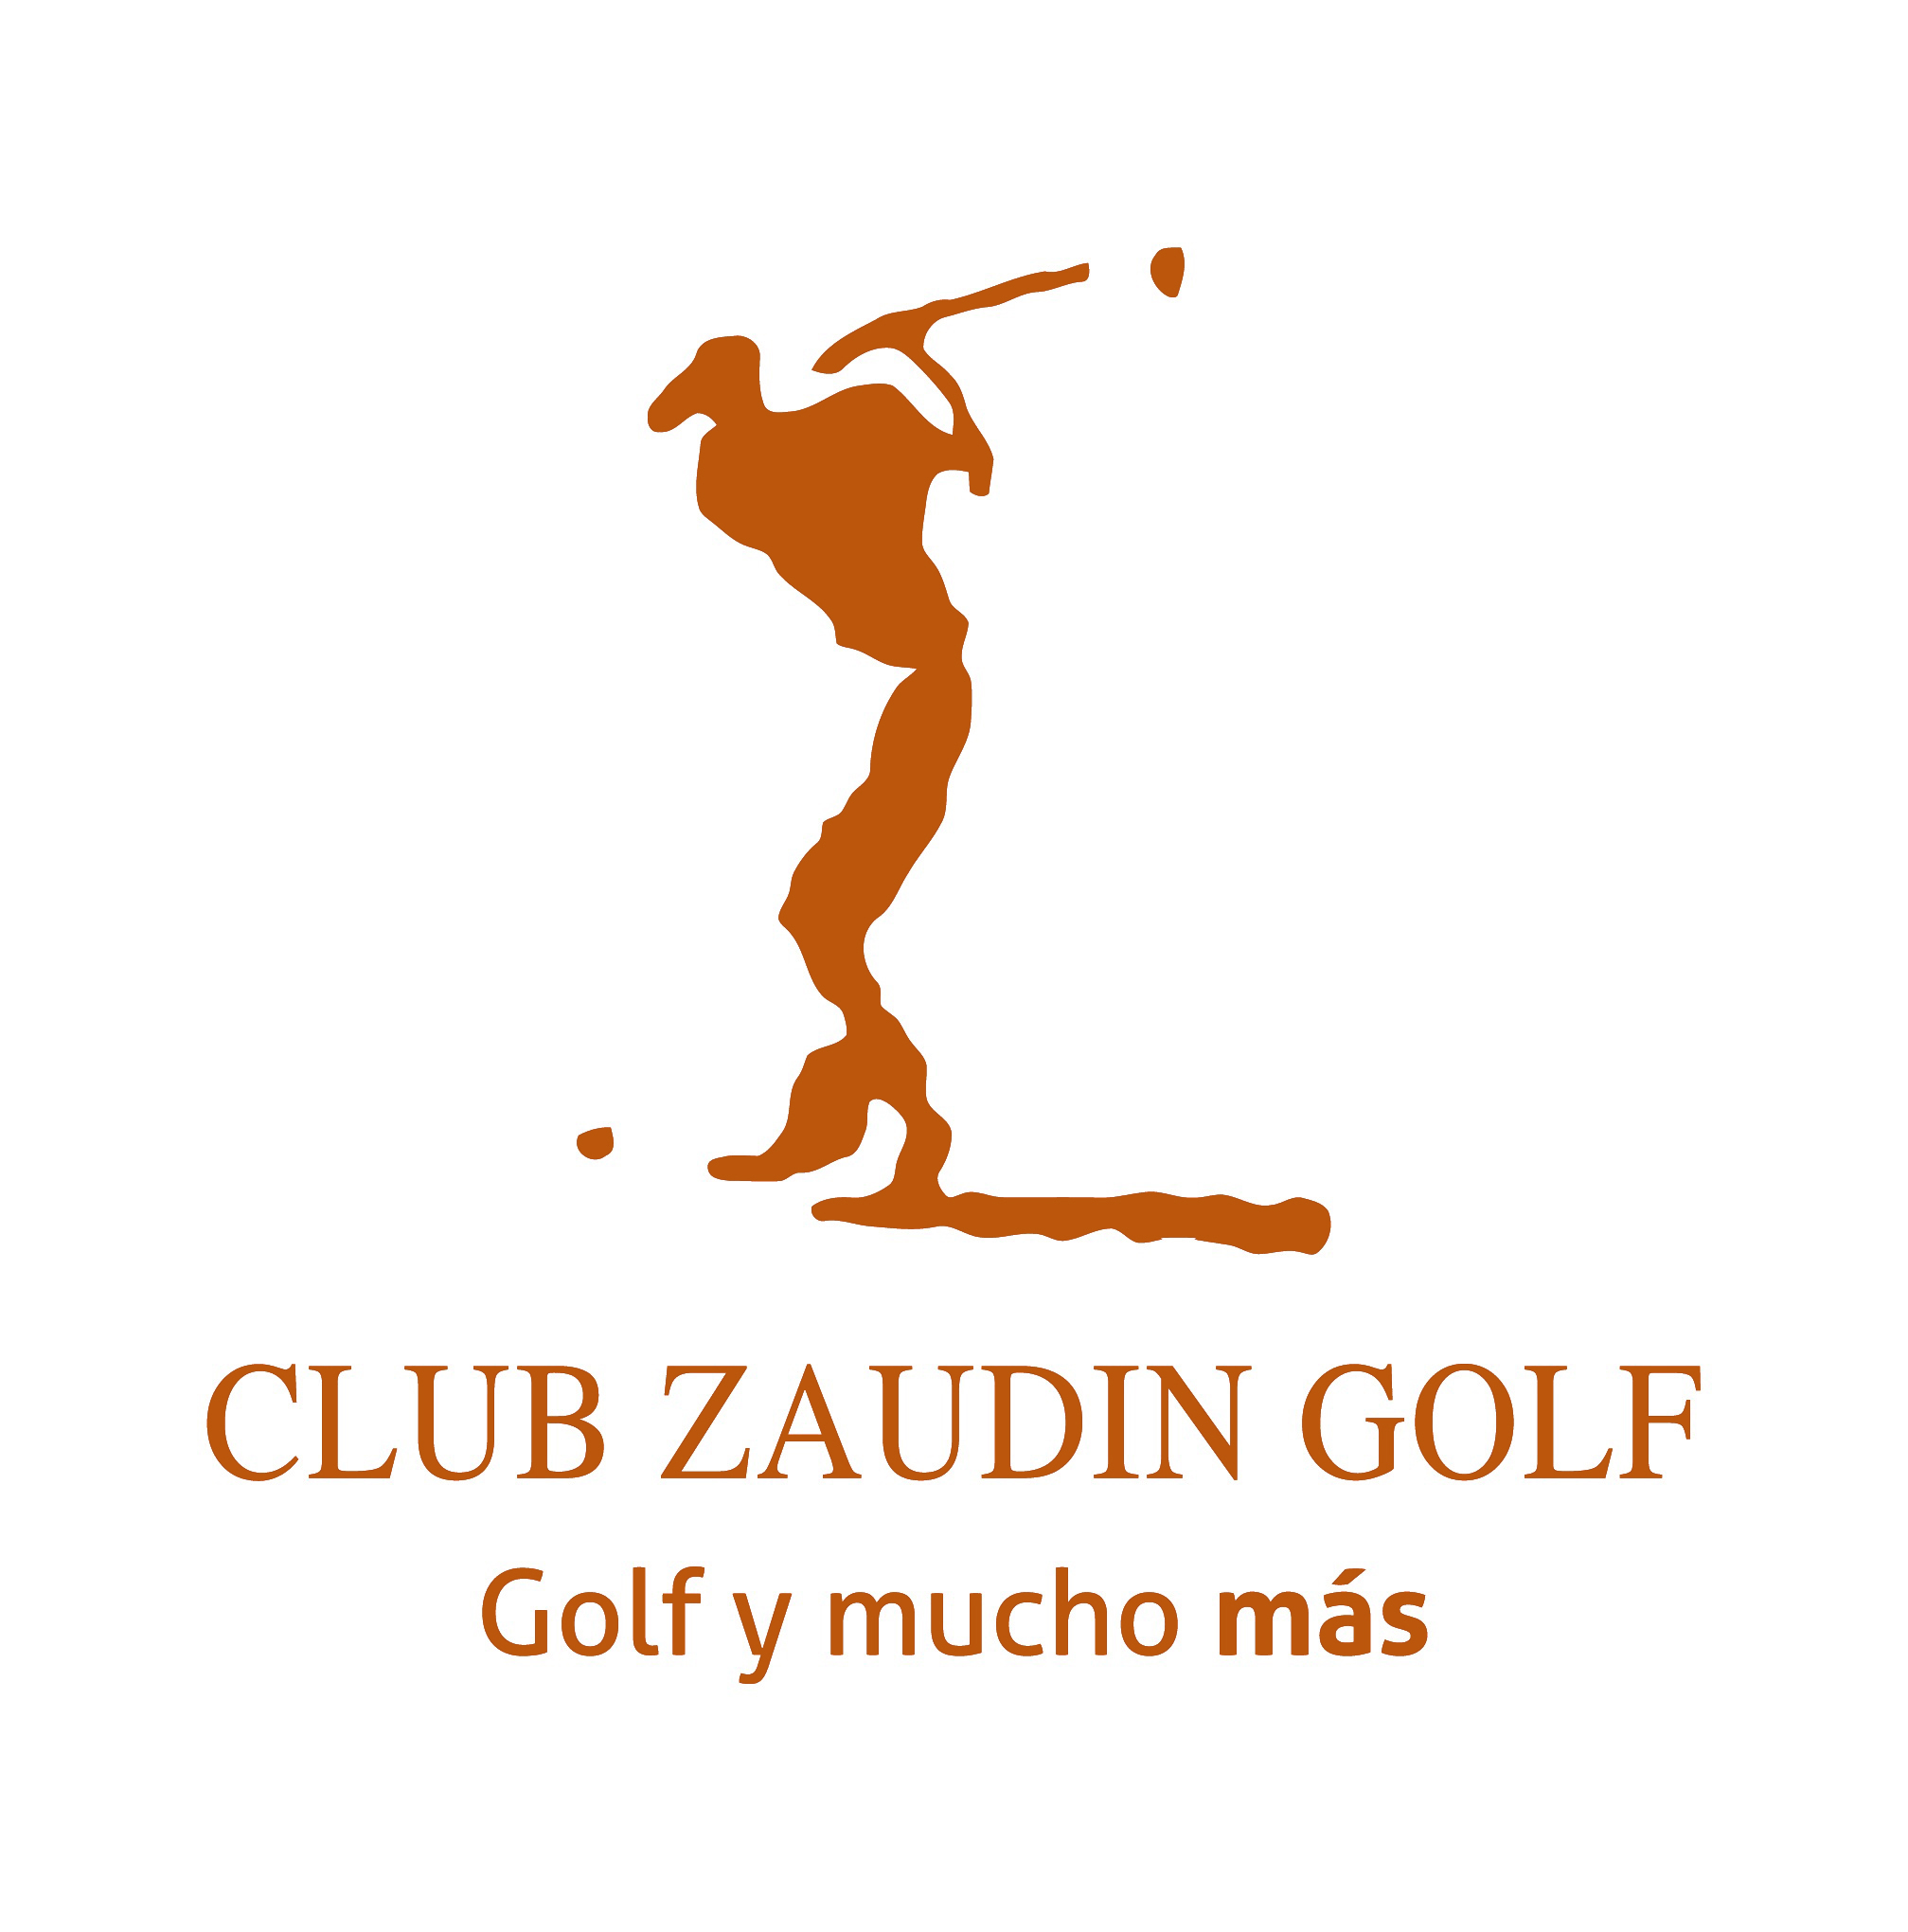 Zaudín-logo-01-Golf-y-mucho-mas.jpg